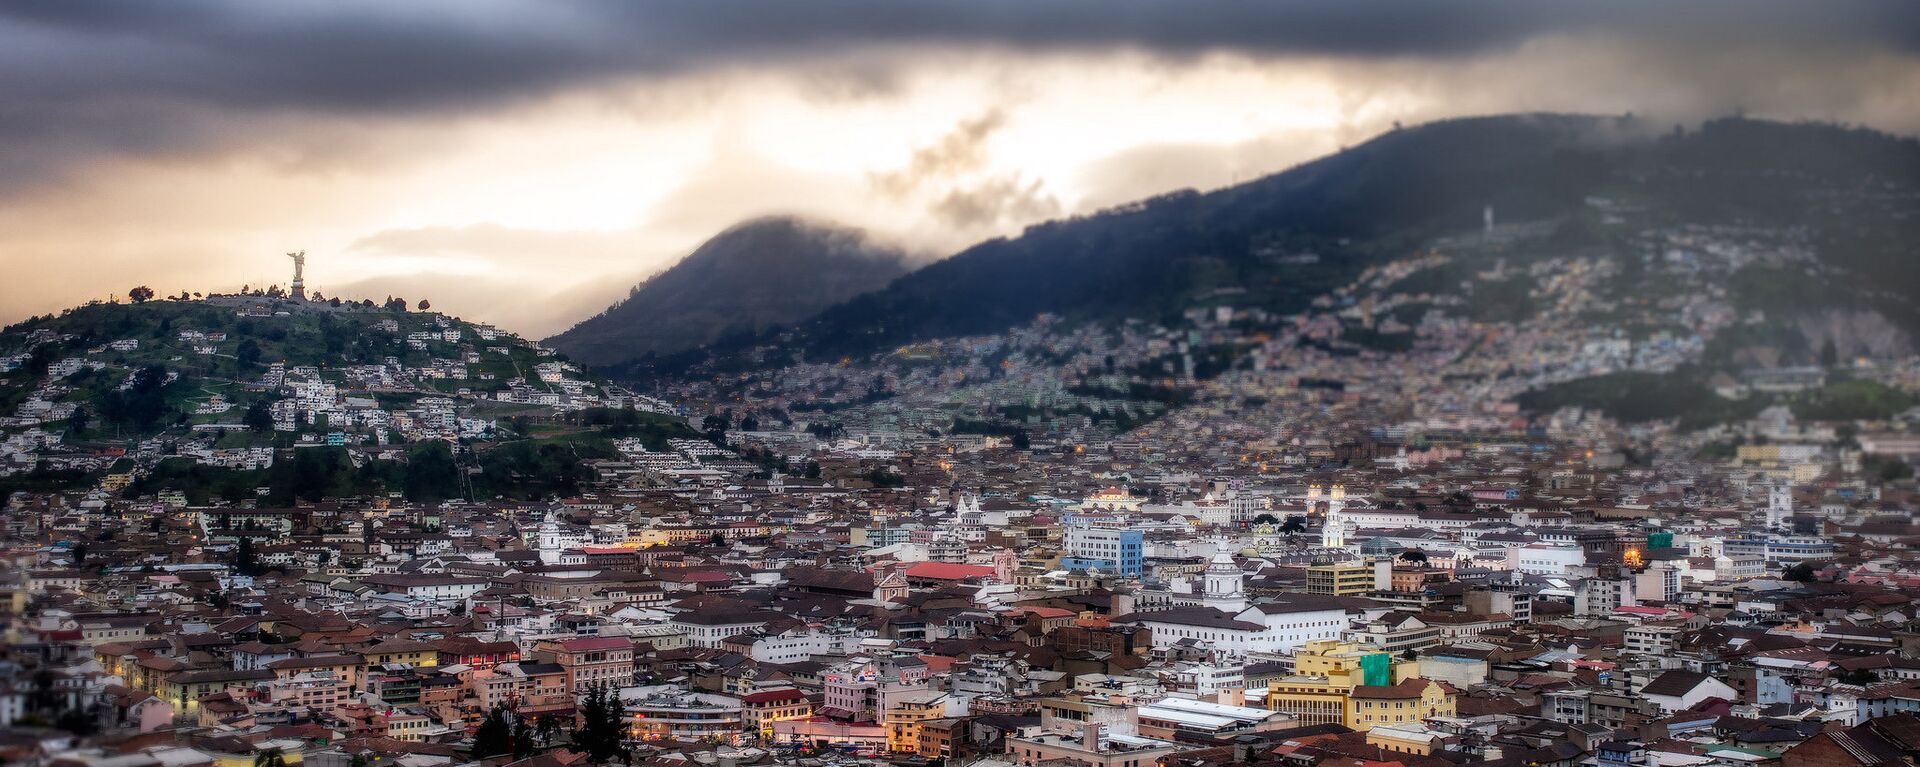 Quito, la capital de Ecuador - Sputnik Mundo, 1920, 30.11.2021